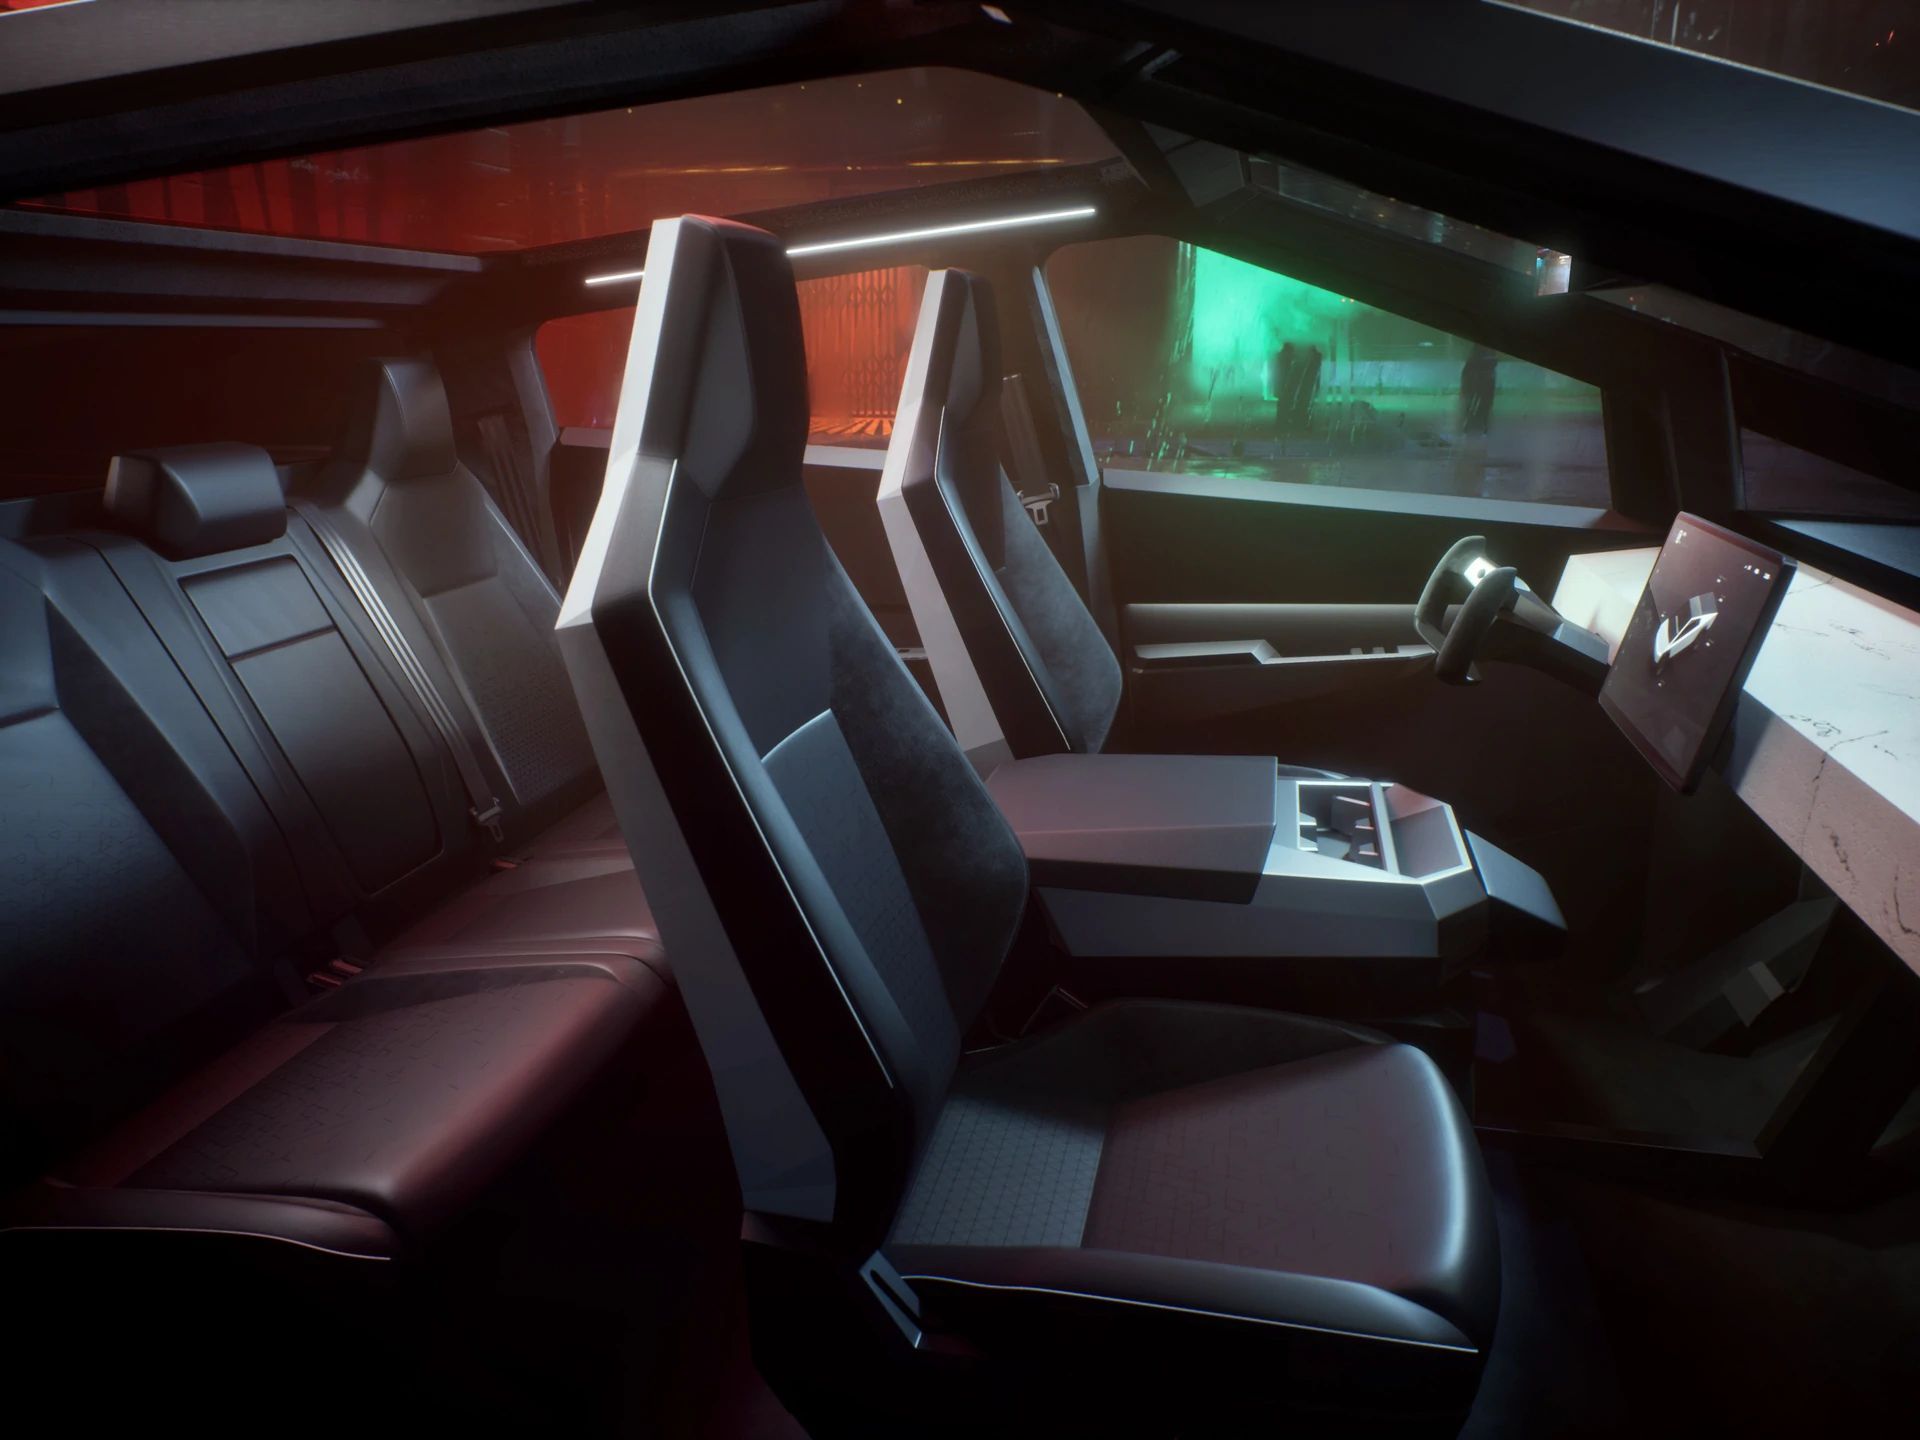 New Spy Shots Reveal Updated Interior Of Tesla’s Cybertruck